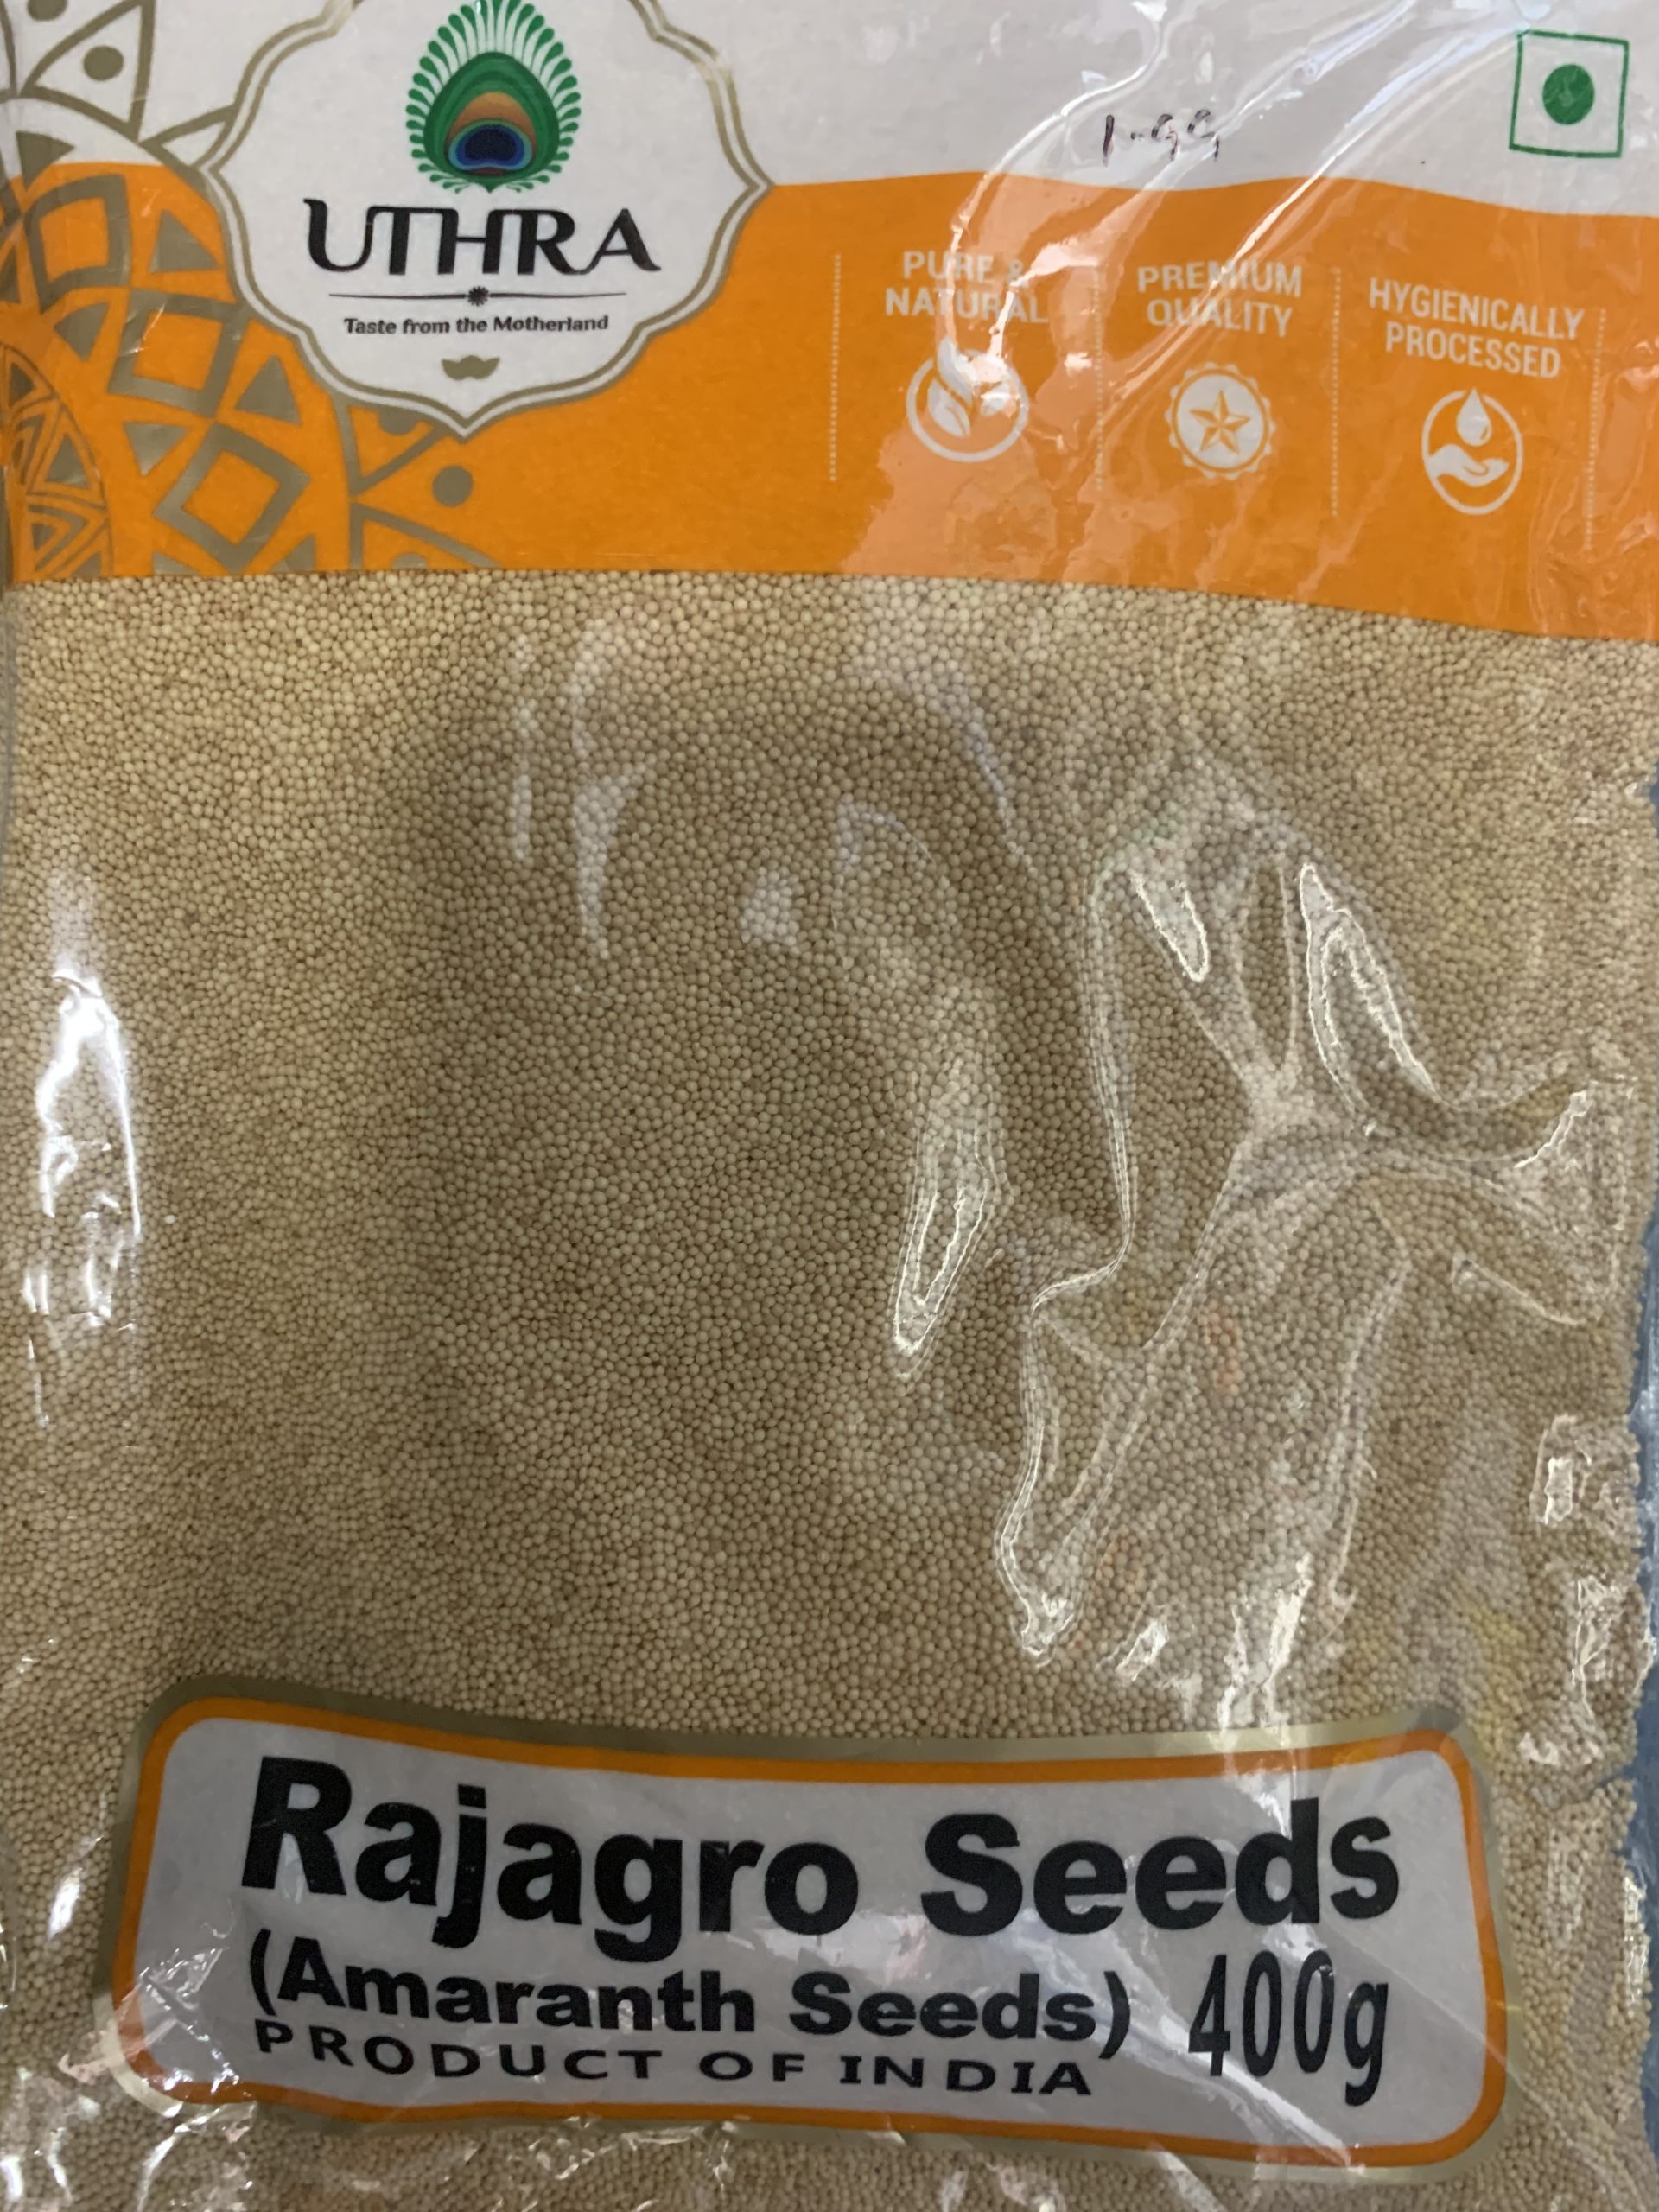 Uthra Rajagro Seeds 400g